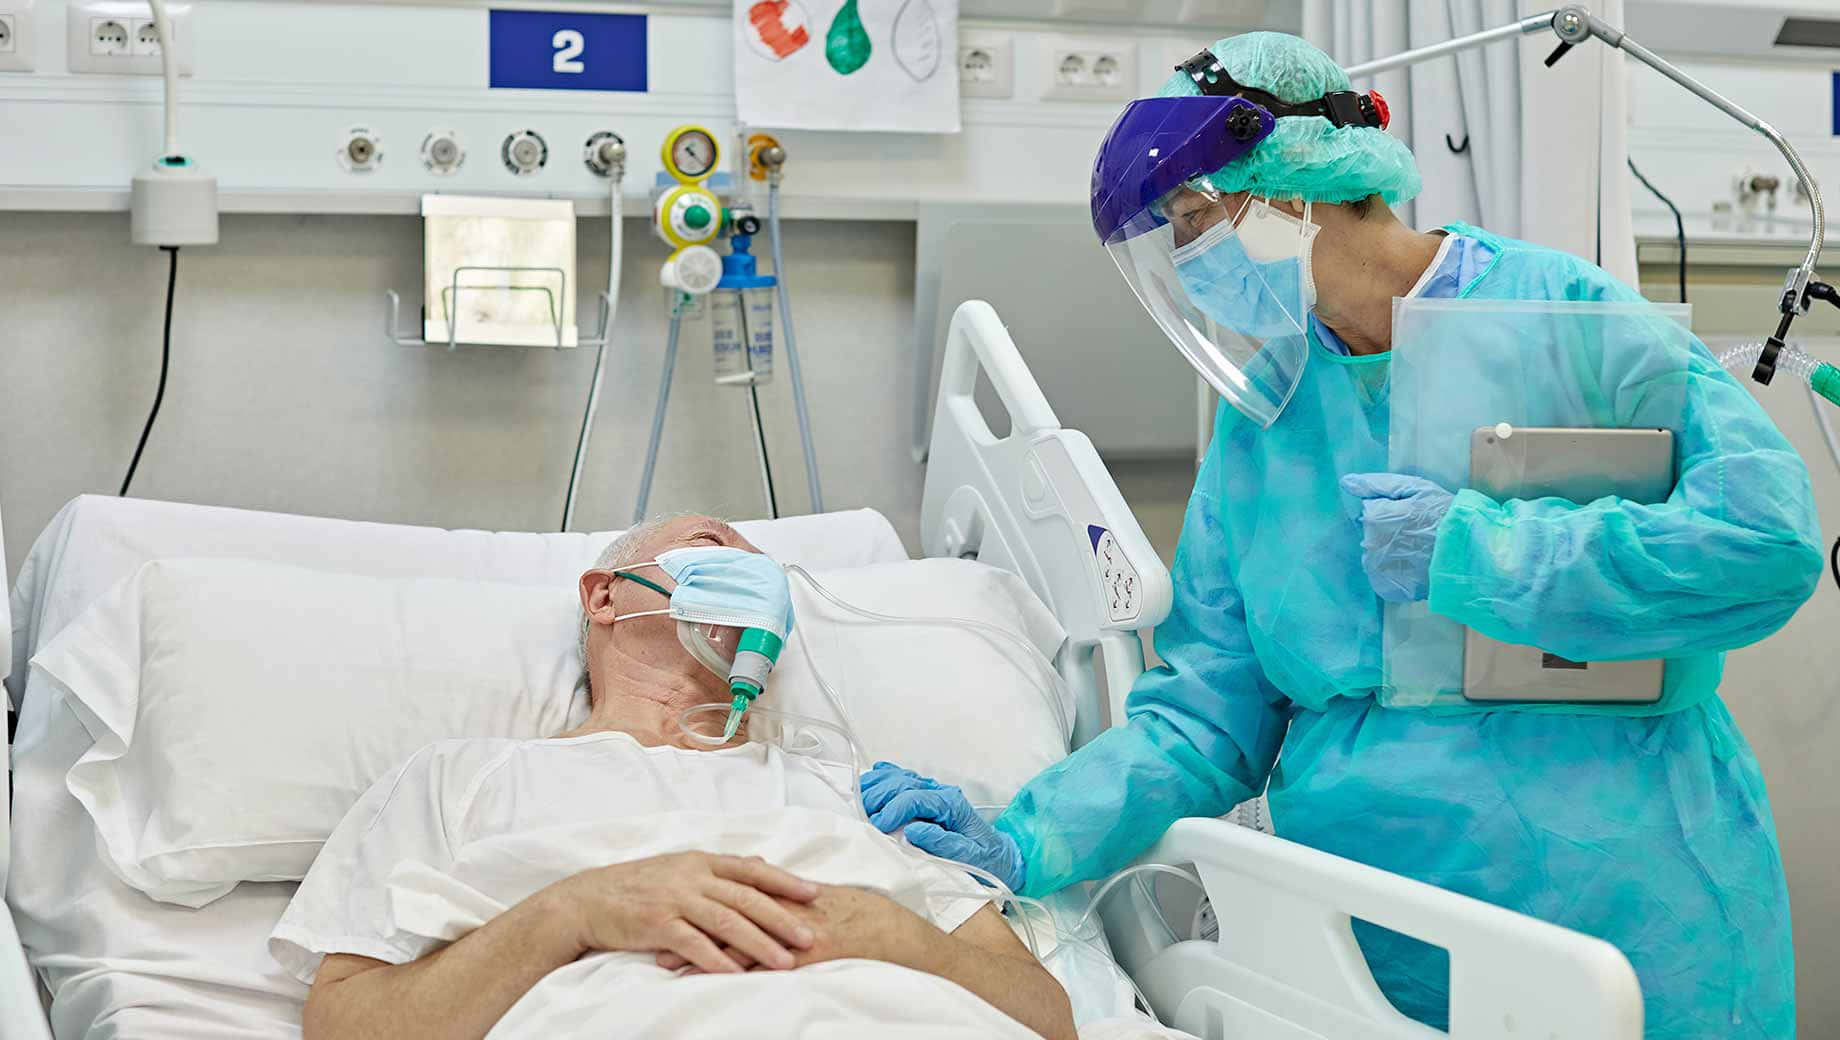 Einefrau Mit Einer Blauen Maske Liegt In Einem Krankenbett.